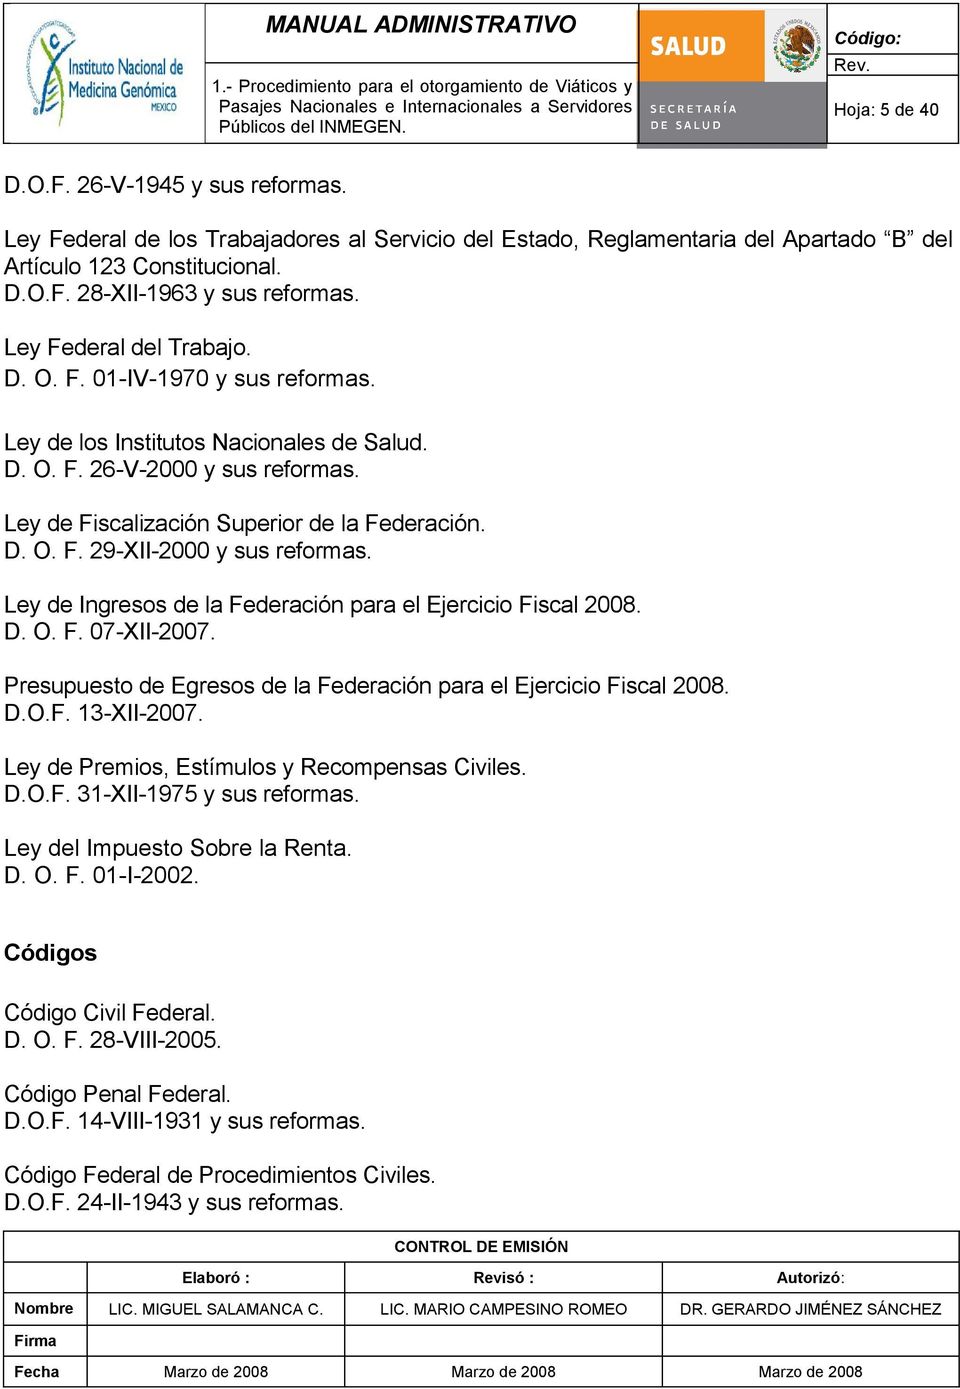 Ley de Ingresos de la Federación para el Ejercicio Fiscal 2008. D. O. F. 07-XII-2007. Presupuesto de Egresos de la Federación para el Ejercicio Fiscal 2008. D.O.F. 13-XII-2007.